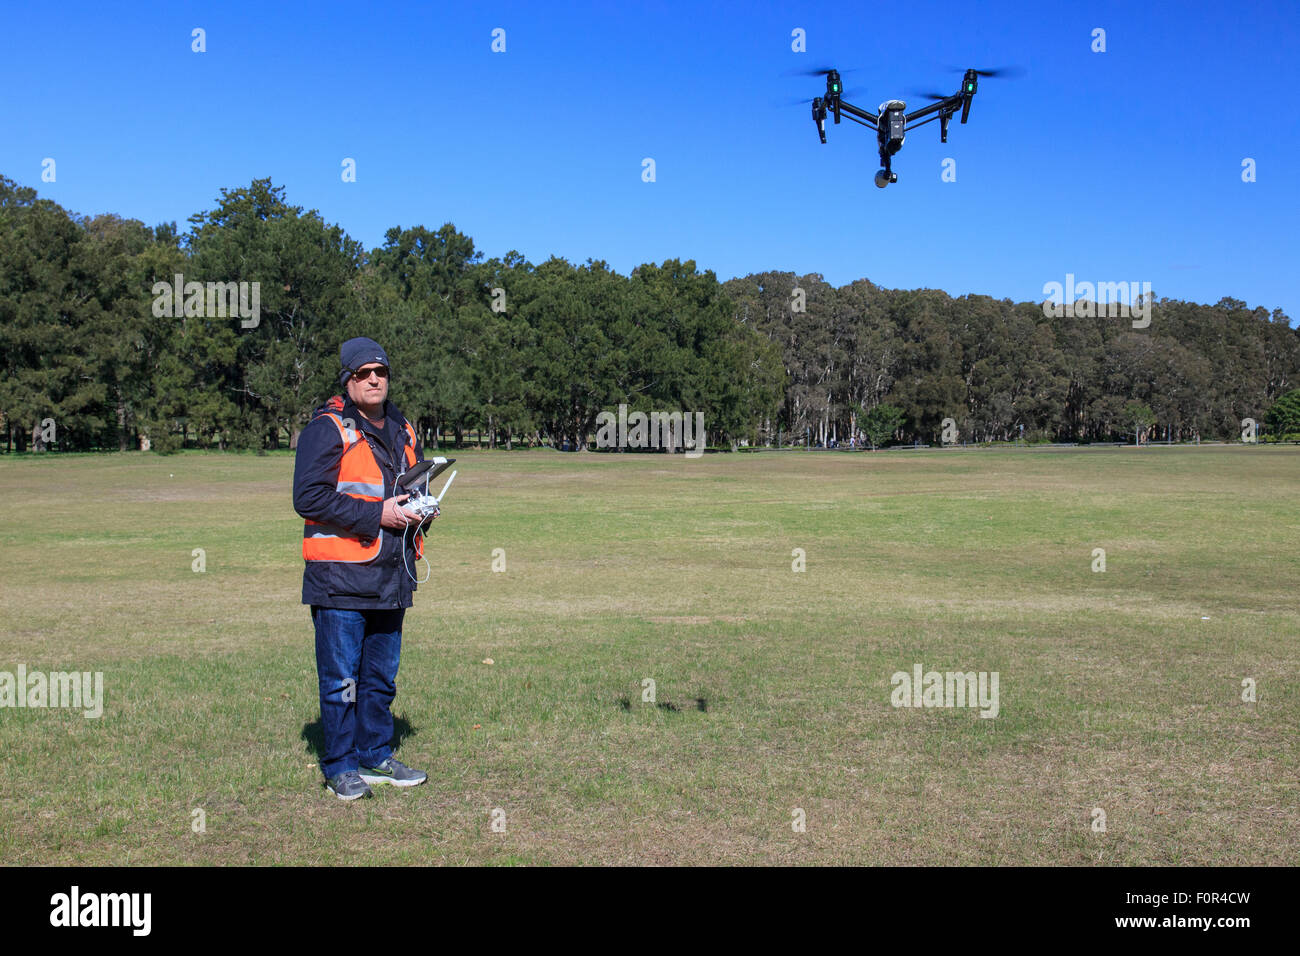 Drohne-Kamera in den Himmel mit Drohne Operator in der Aufnahme  Stockfotografie - Alamy